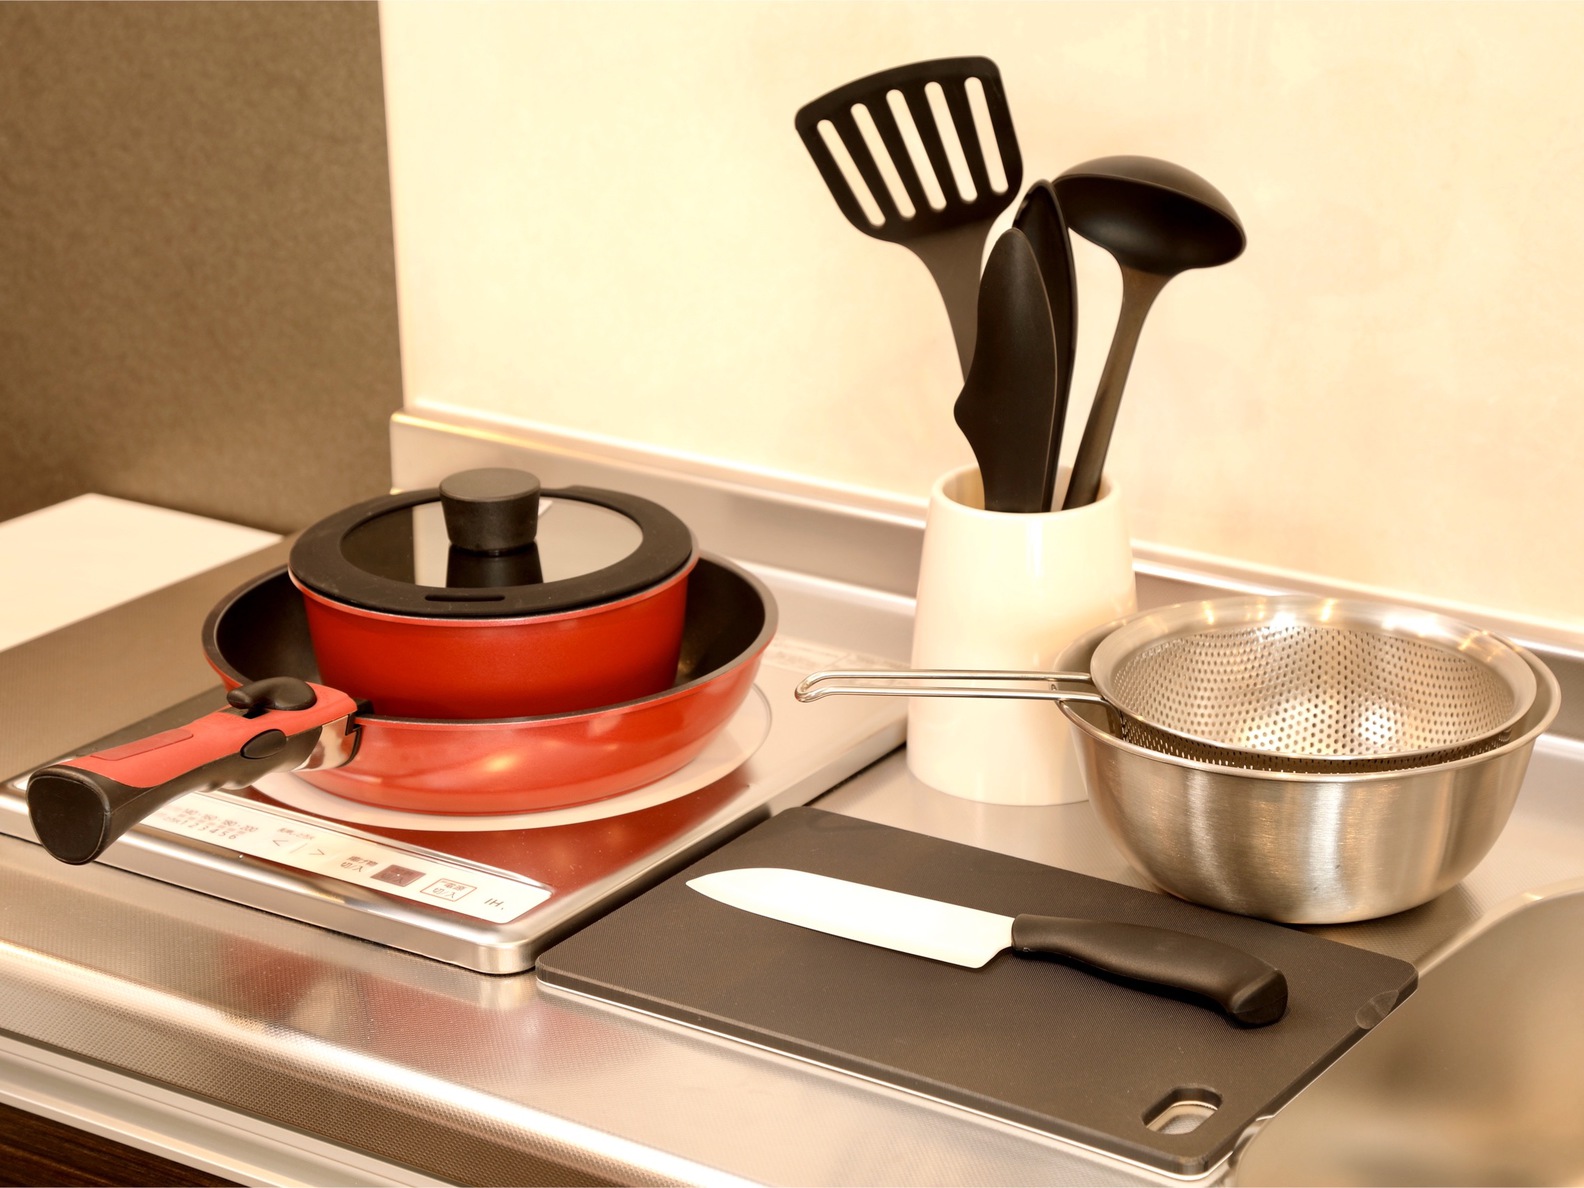 客室設備 全室調理器具・炊飯器・電気ケトル等、ご用意しております。